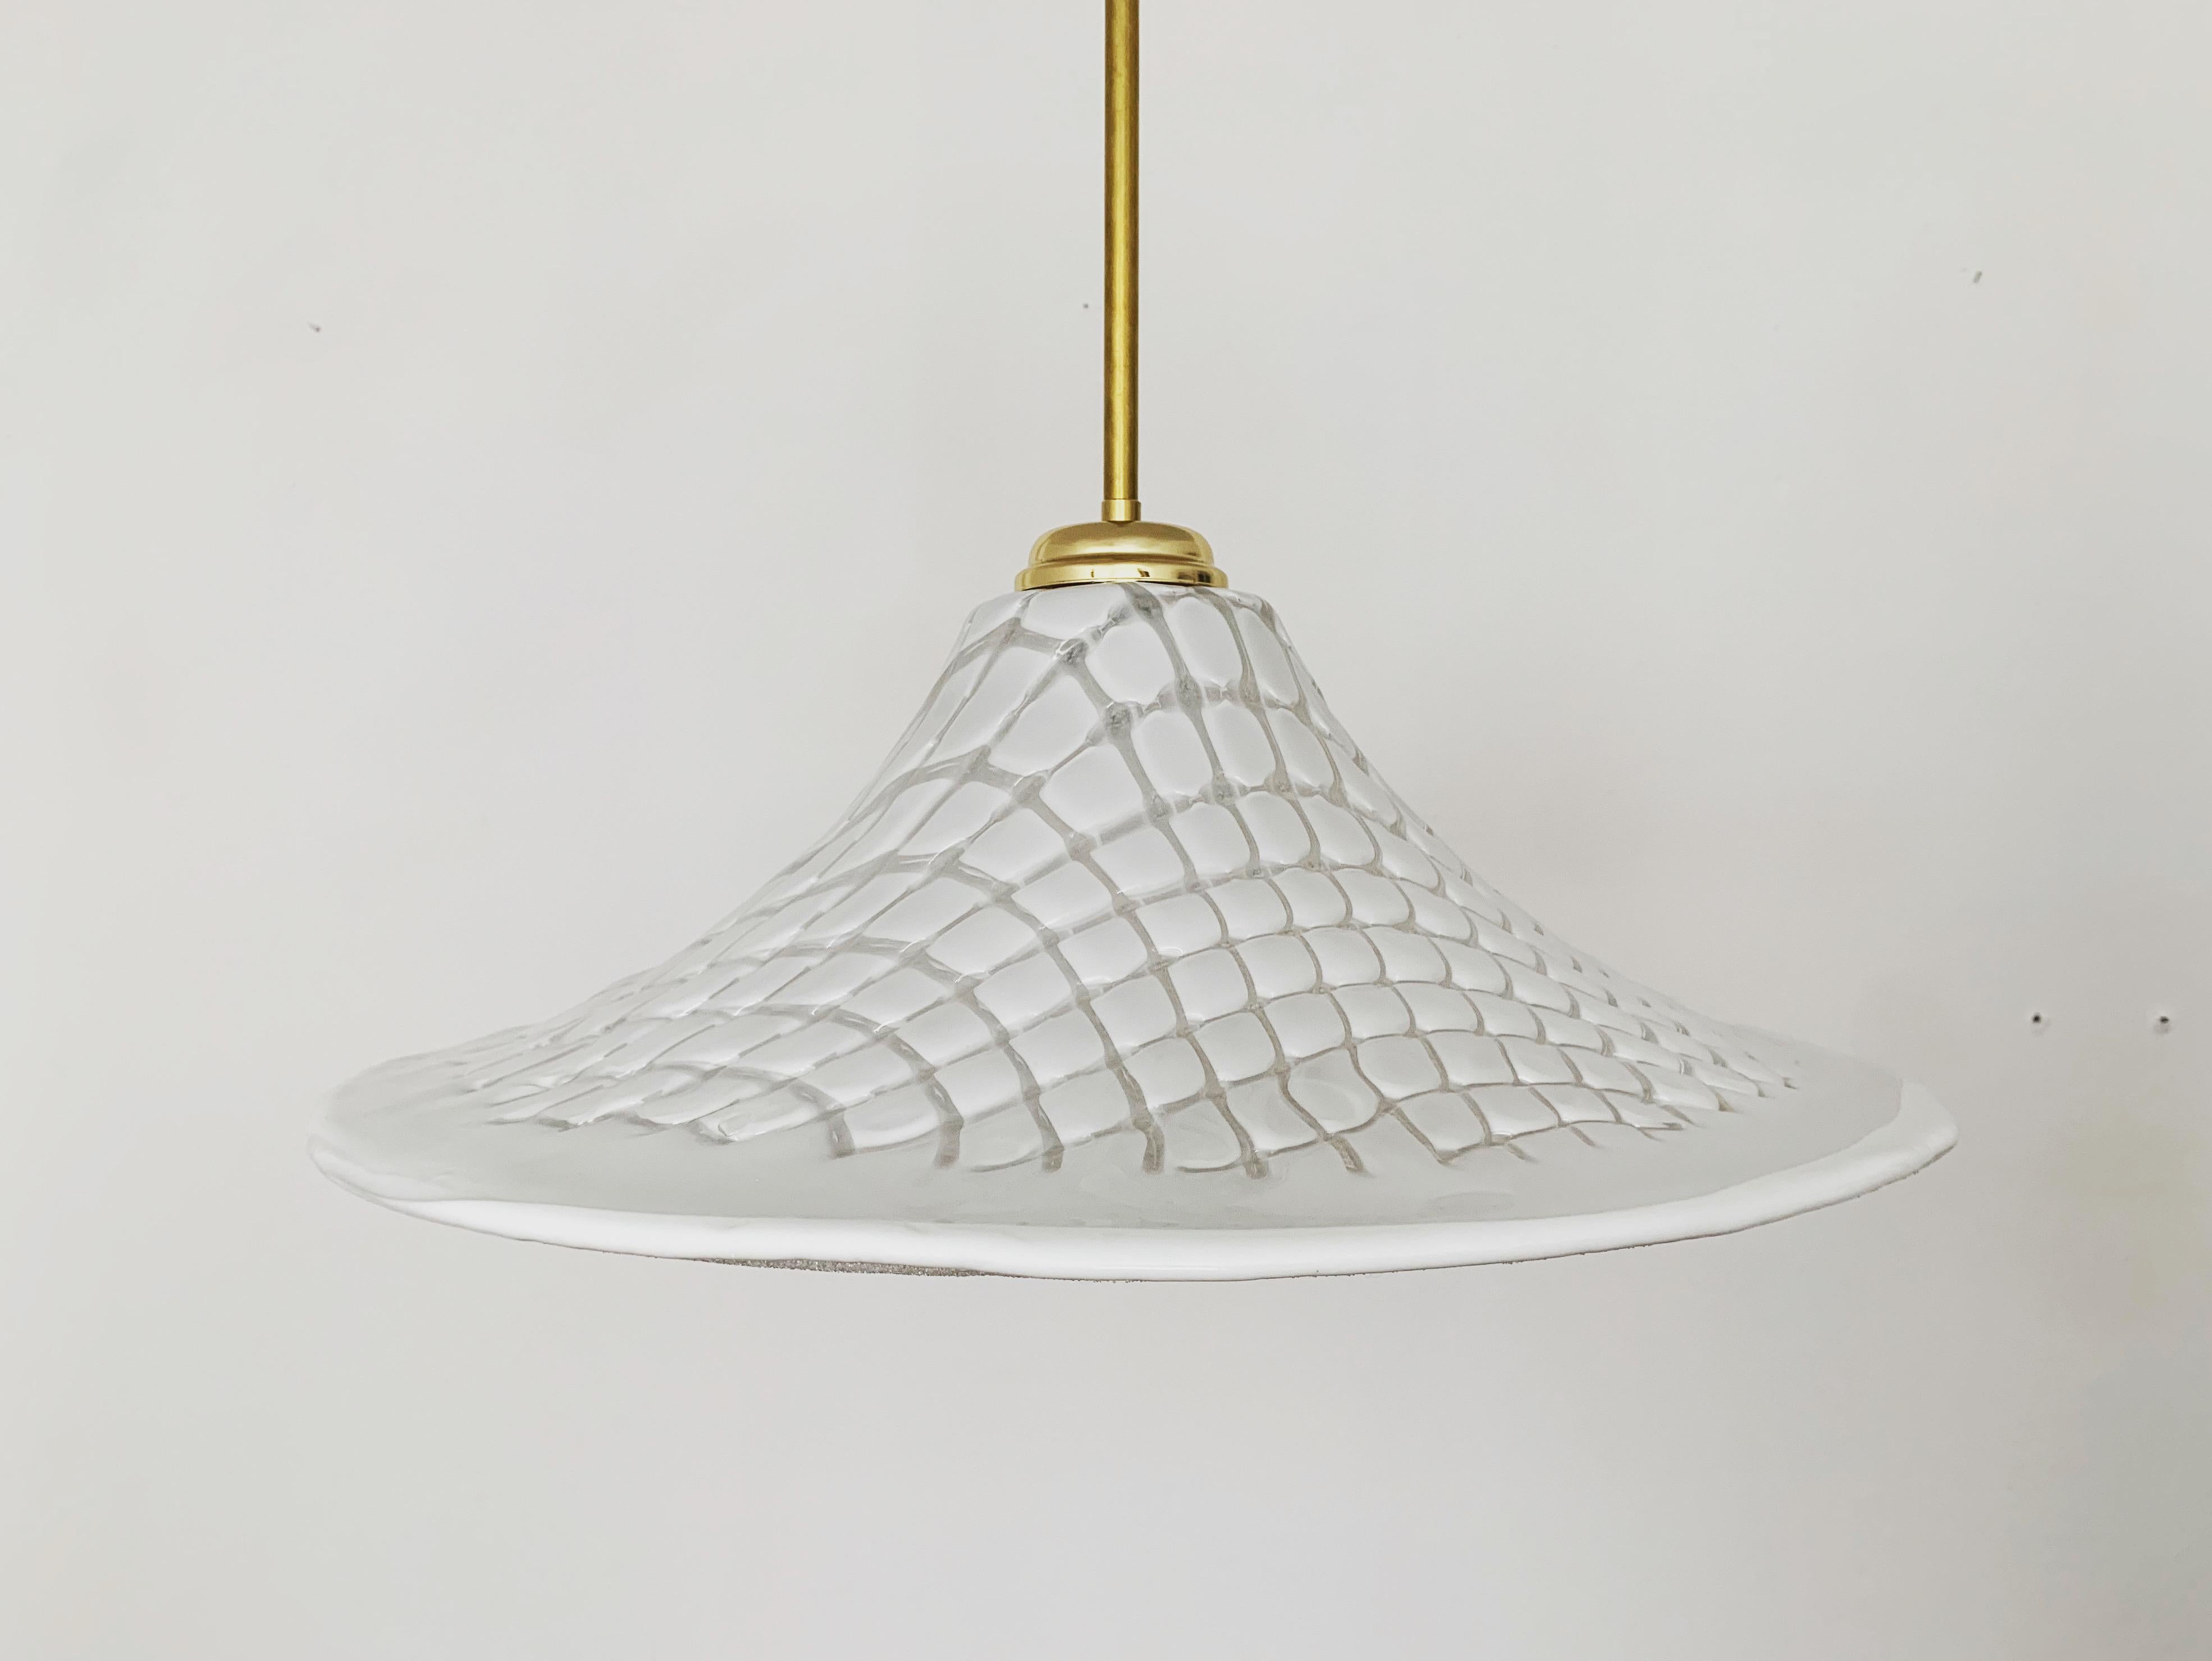 Merveilleuse et grande lampe italienne de Murano des années 1960.
Un design extraordinairement réussi et une réalisation de très haute qualité.
La lampe est très élégante.
La structure tridimensionnelle crée une lumière très agréable.

Condit